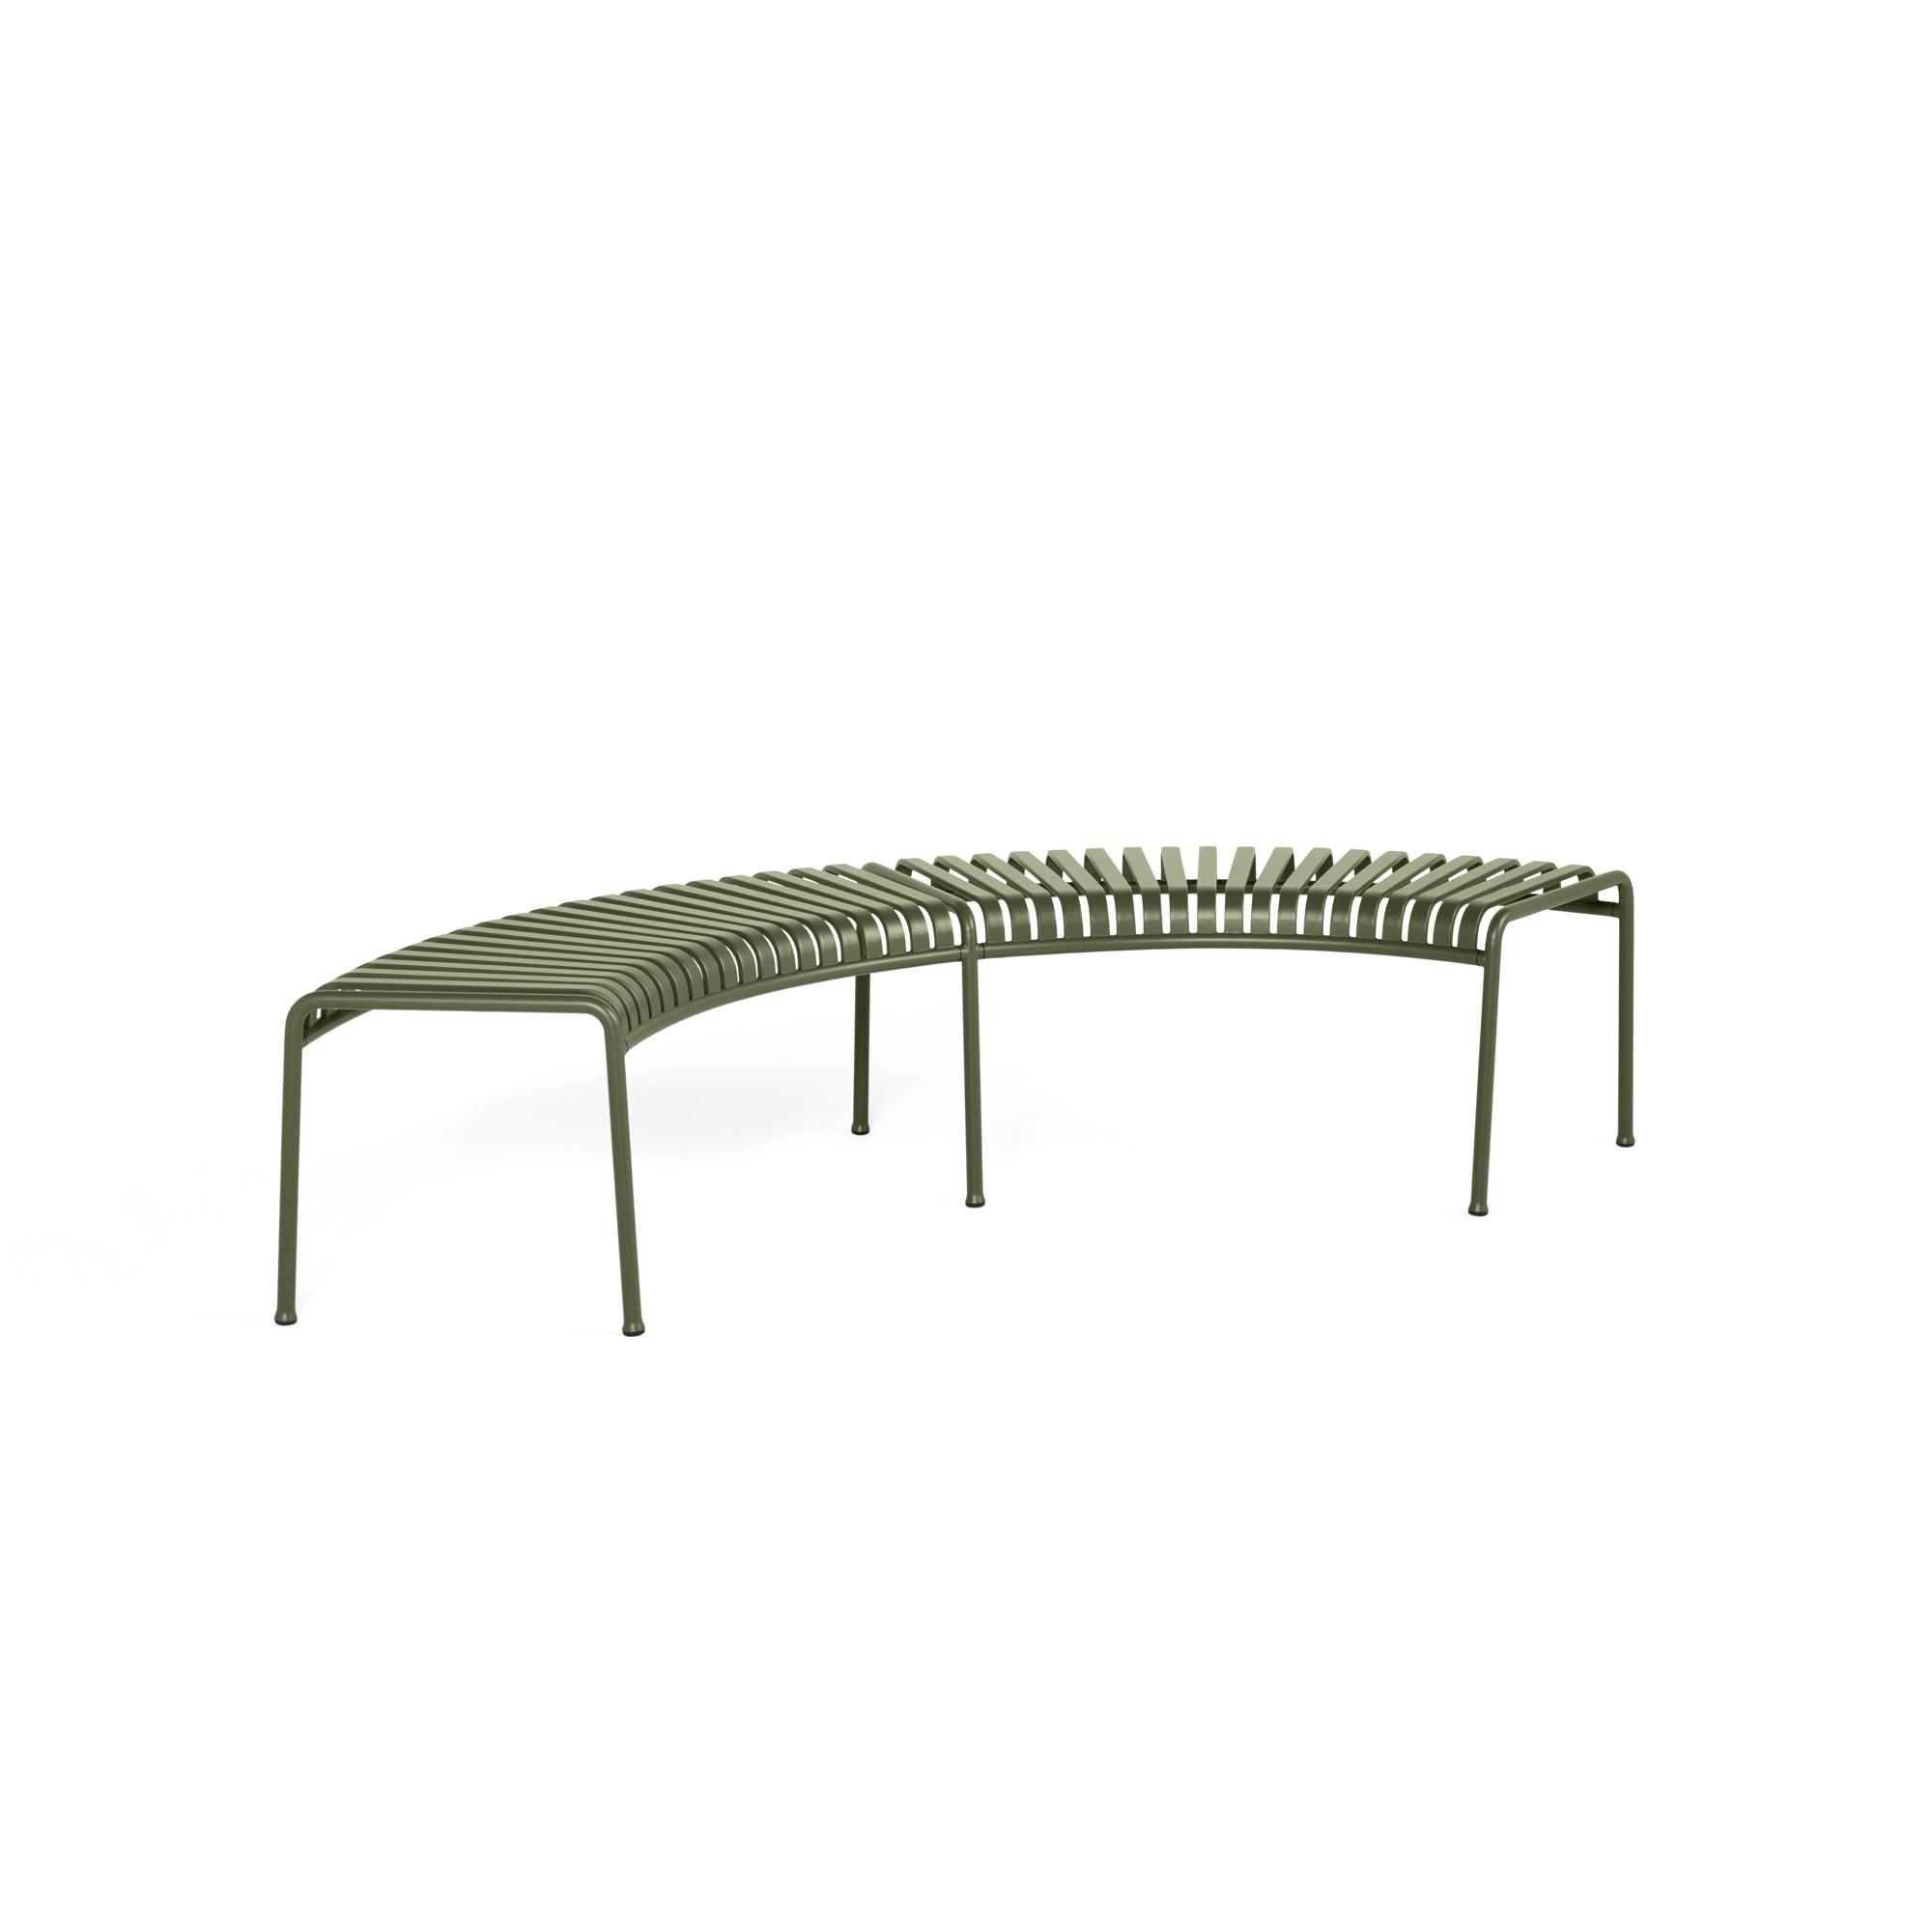 HAY Palissade Park Bench Set of 2 Freestanding Olives